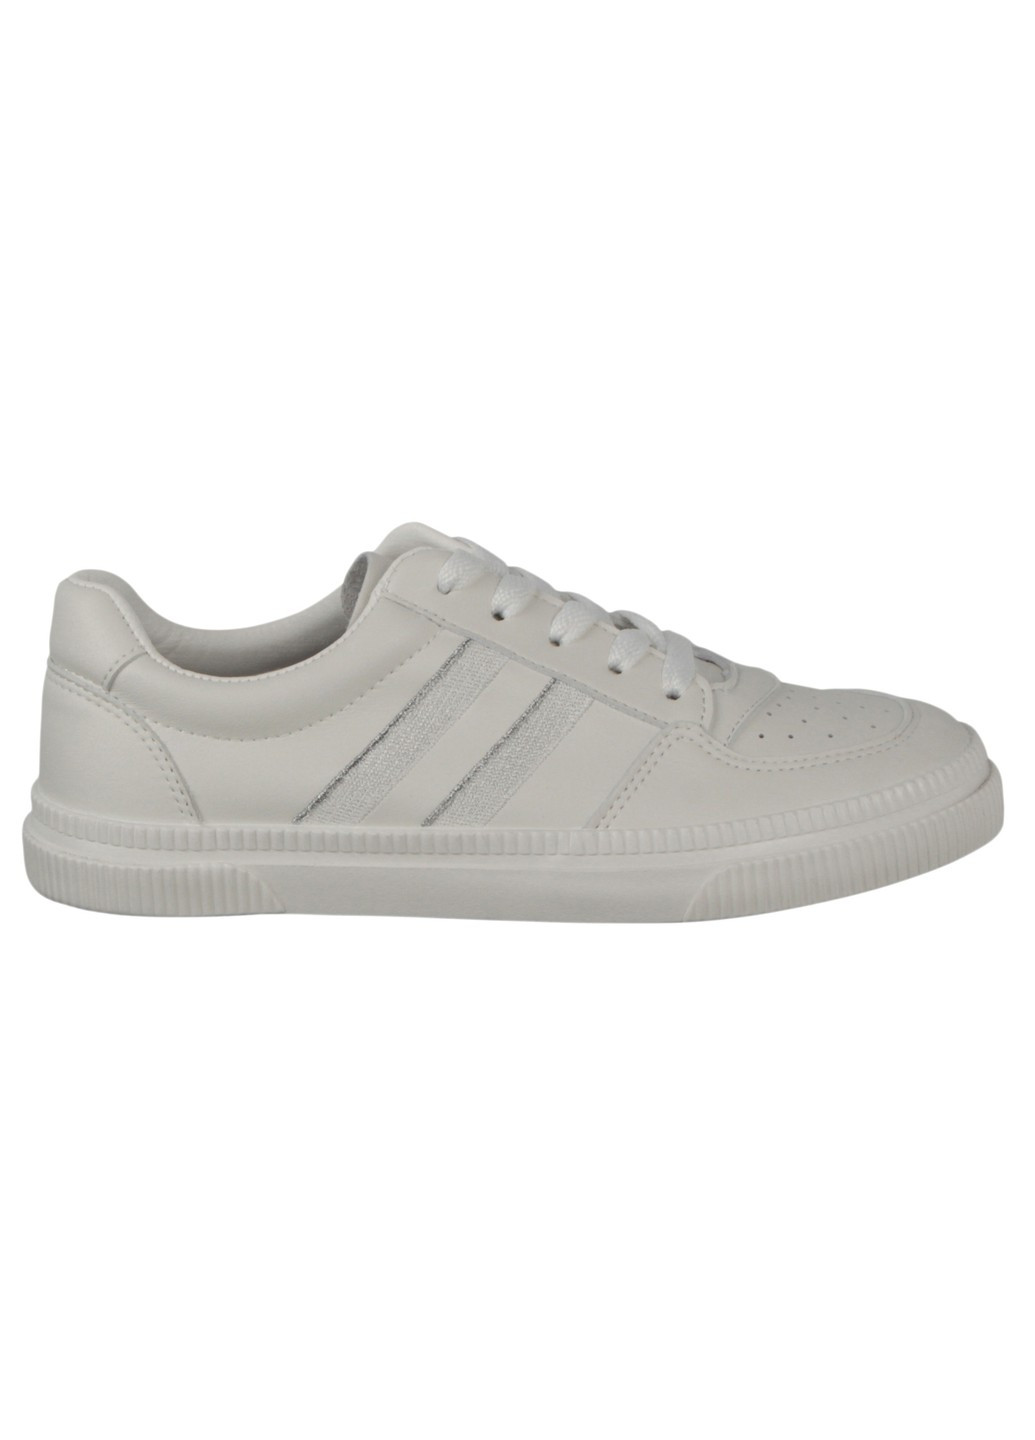 Белые демисезонные женские кроссовки 198020 Renzoni